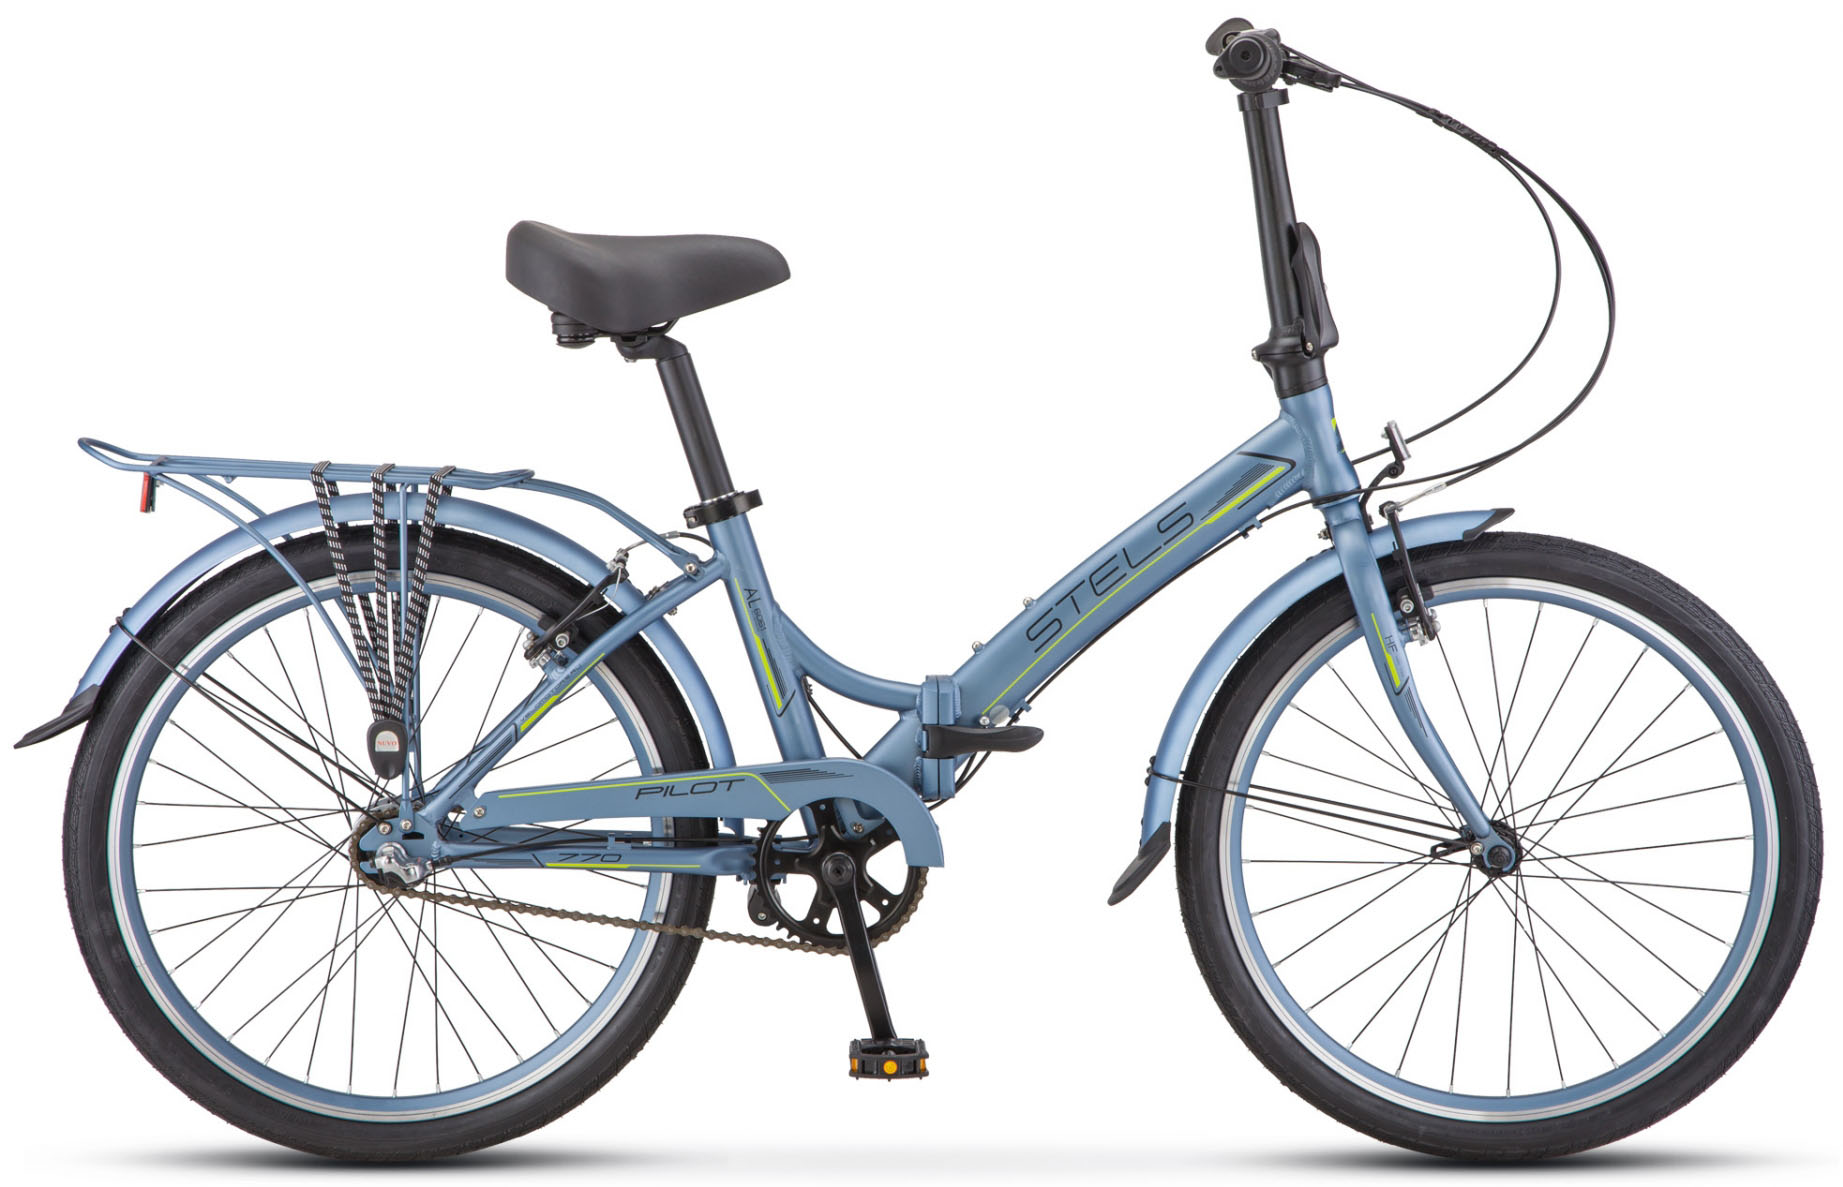  Отзывы о Складном велосипеде Stels Pilot 770 24 V010 2019